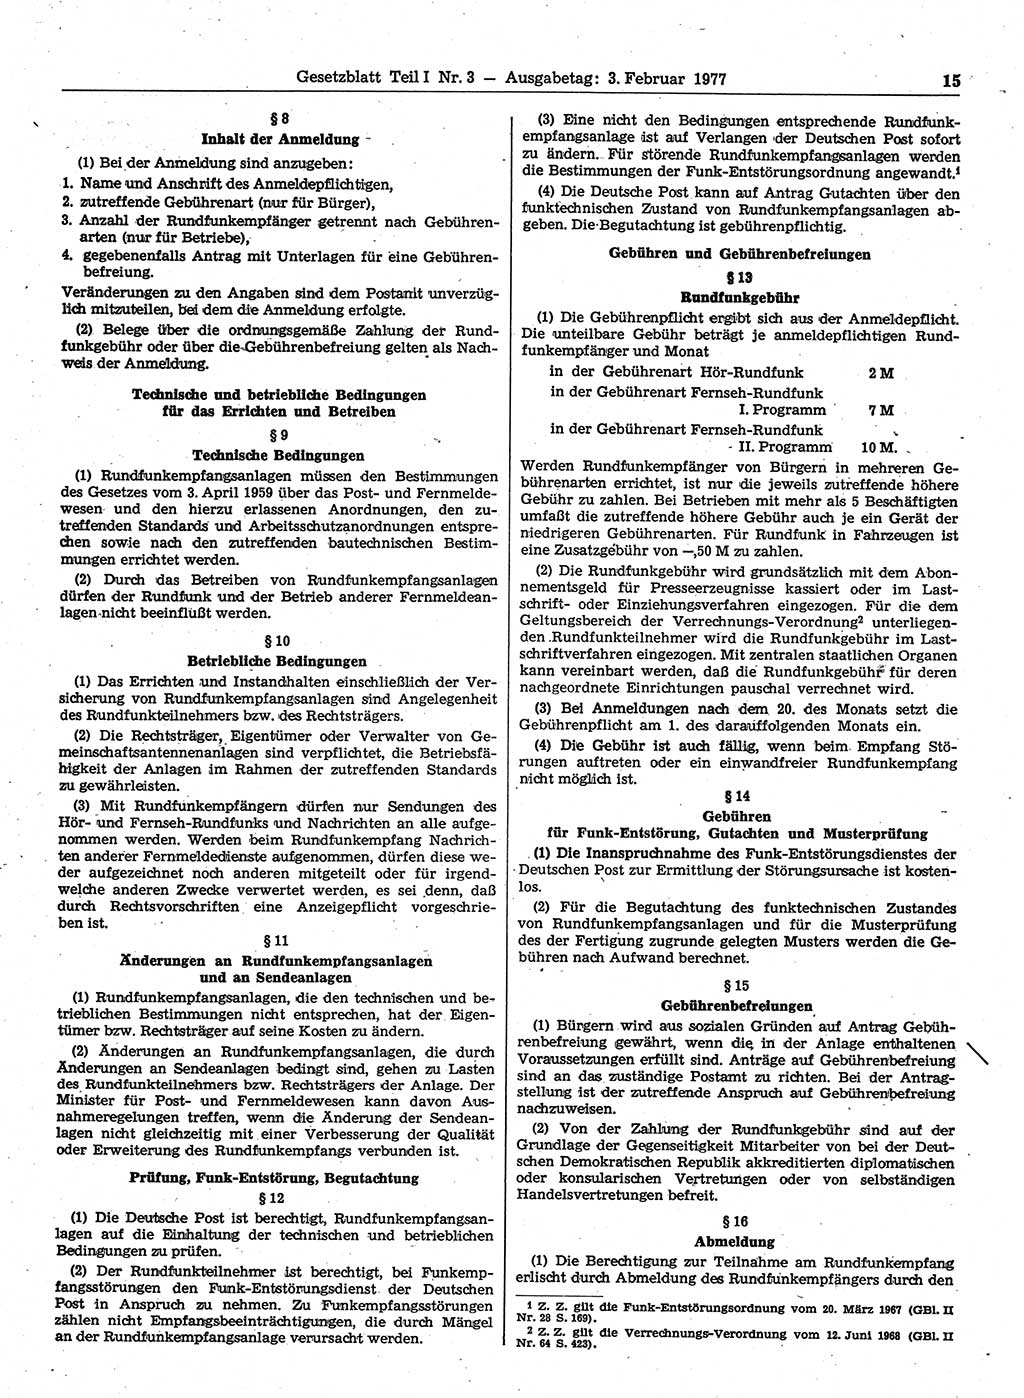 Gesetzblatt (GBl.) der Deutschen Demokratischen Republik (DDR) Teil Ⅰ 1977, Seite 15 (GBl. DDR Ⅰ 1977, S. 15)